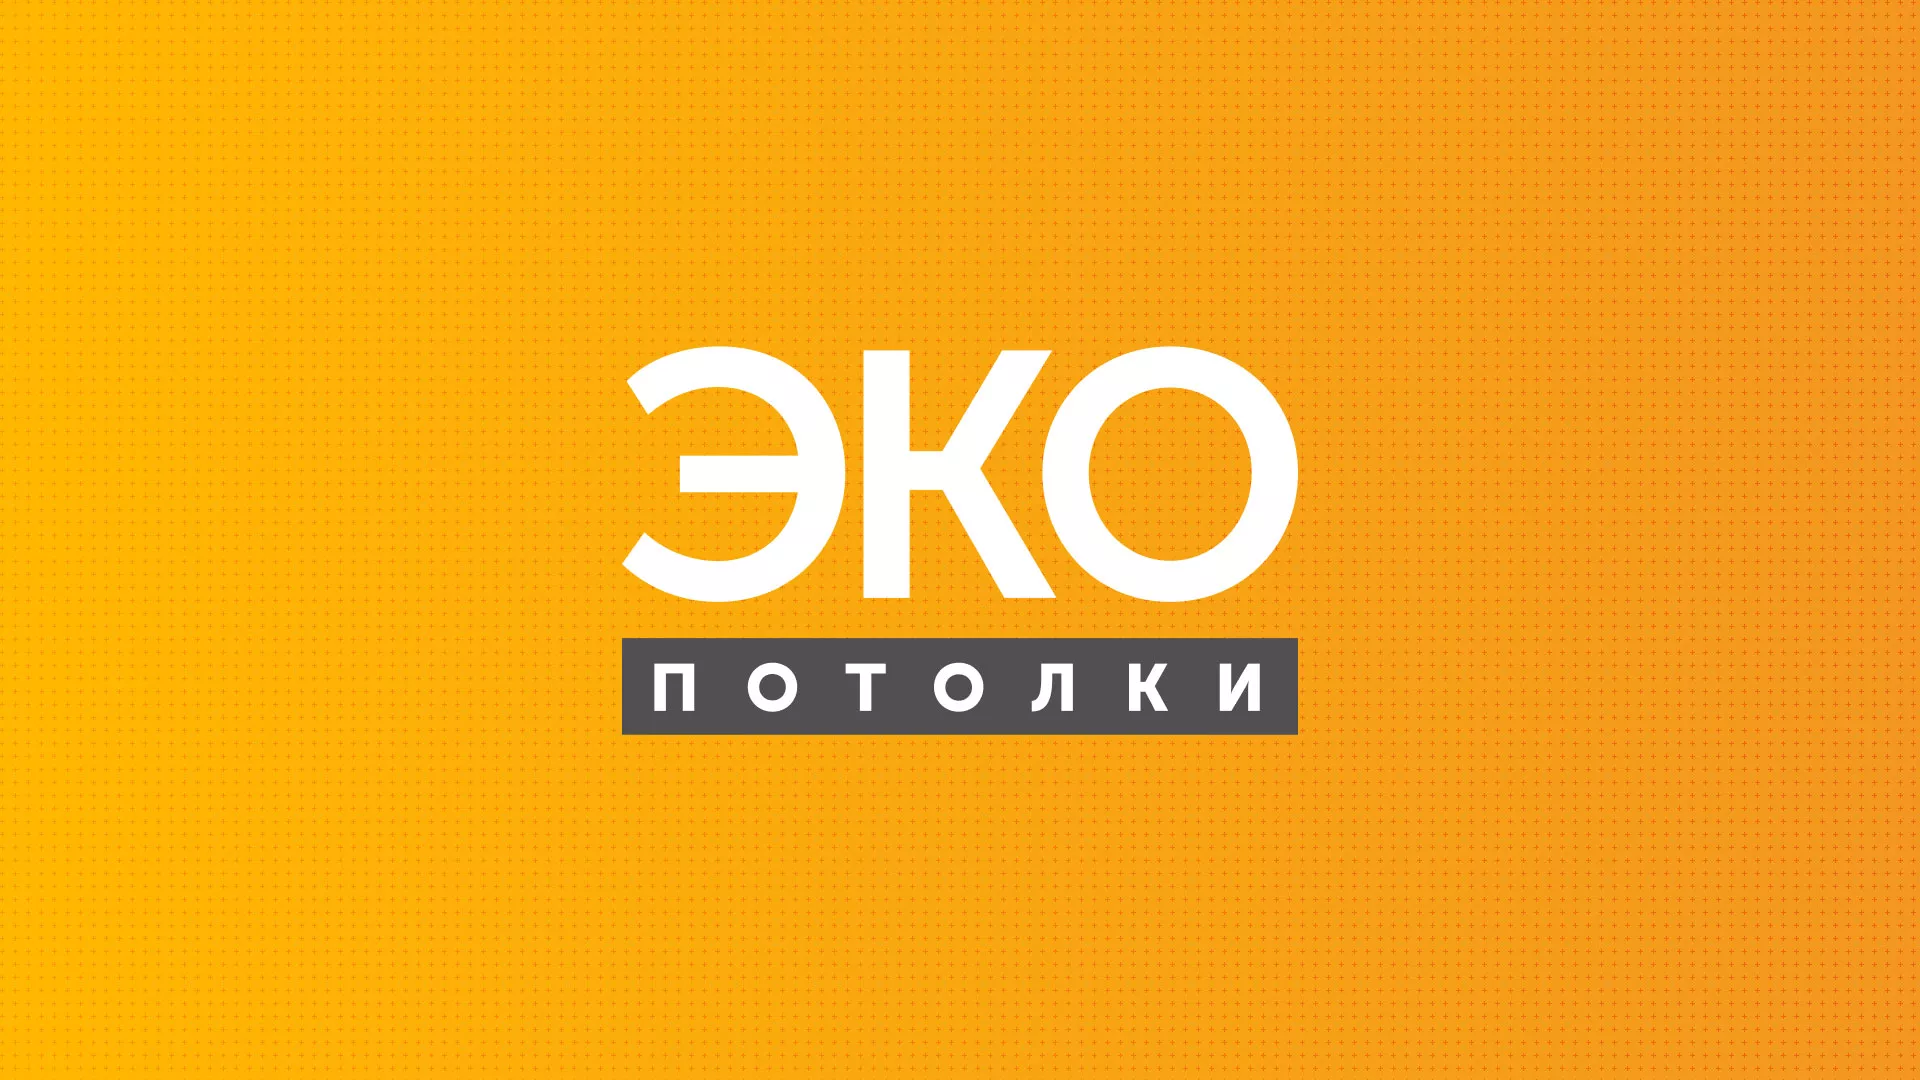 Разработка сайта по натяжным потолкам «Эко Потолки» в Усолье-Сибирском